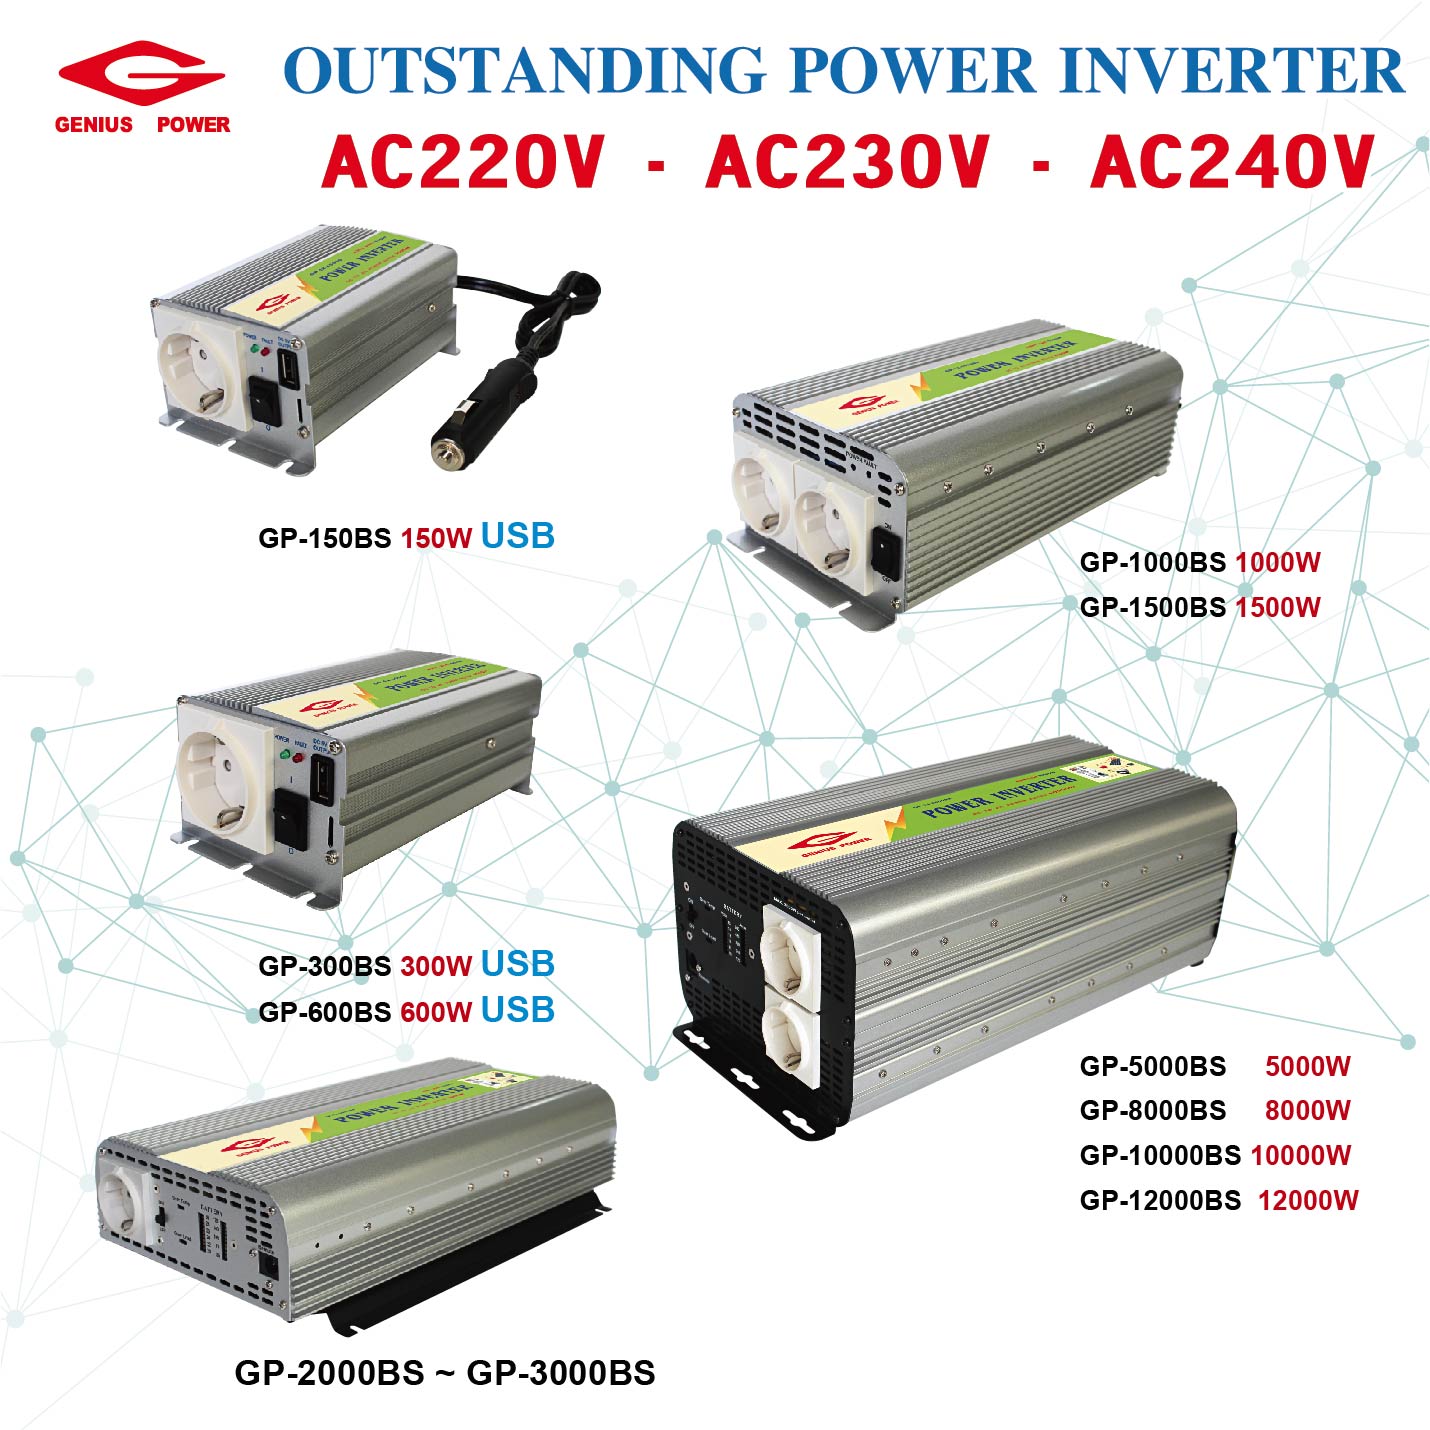 OUTSTANDING POWER INVERTER-AC220V‧AC230V‧AC240V